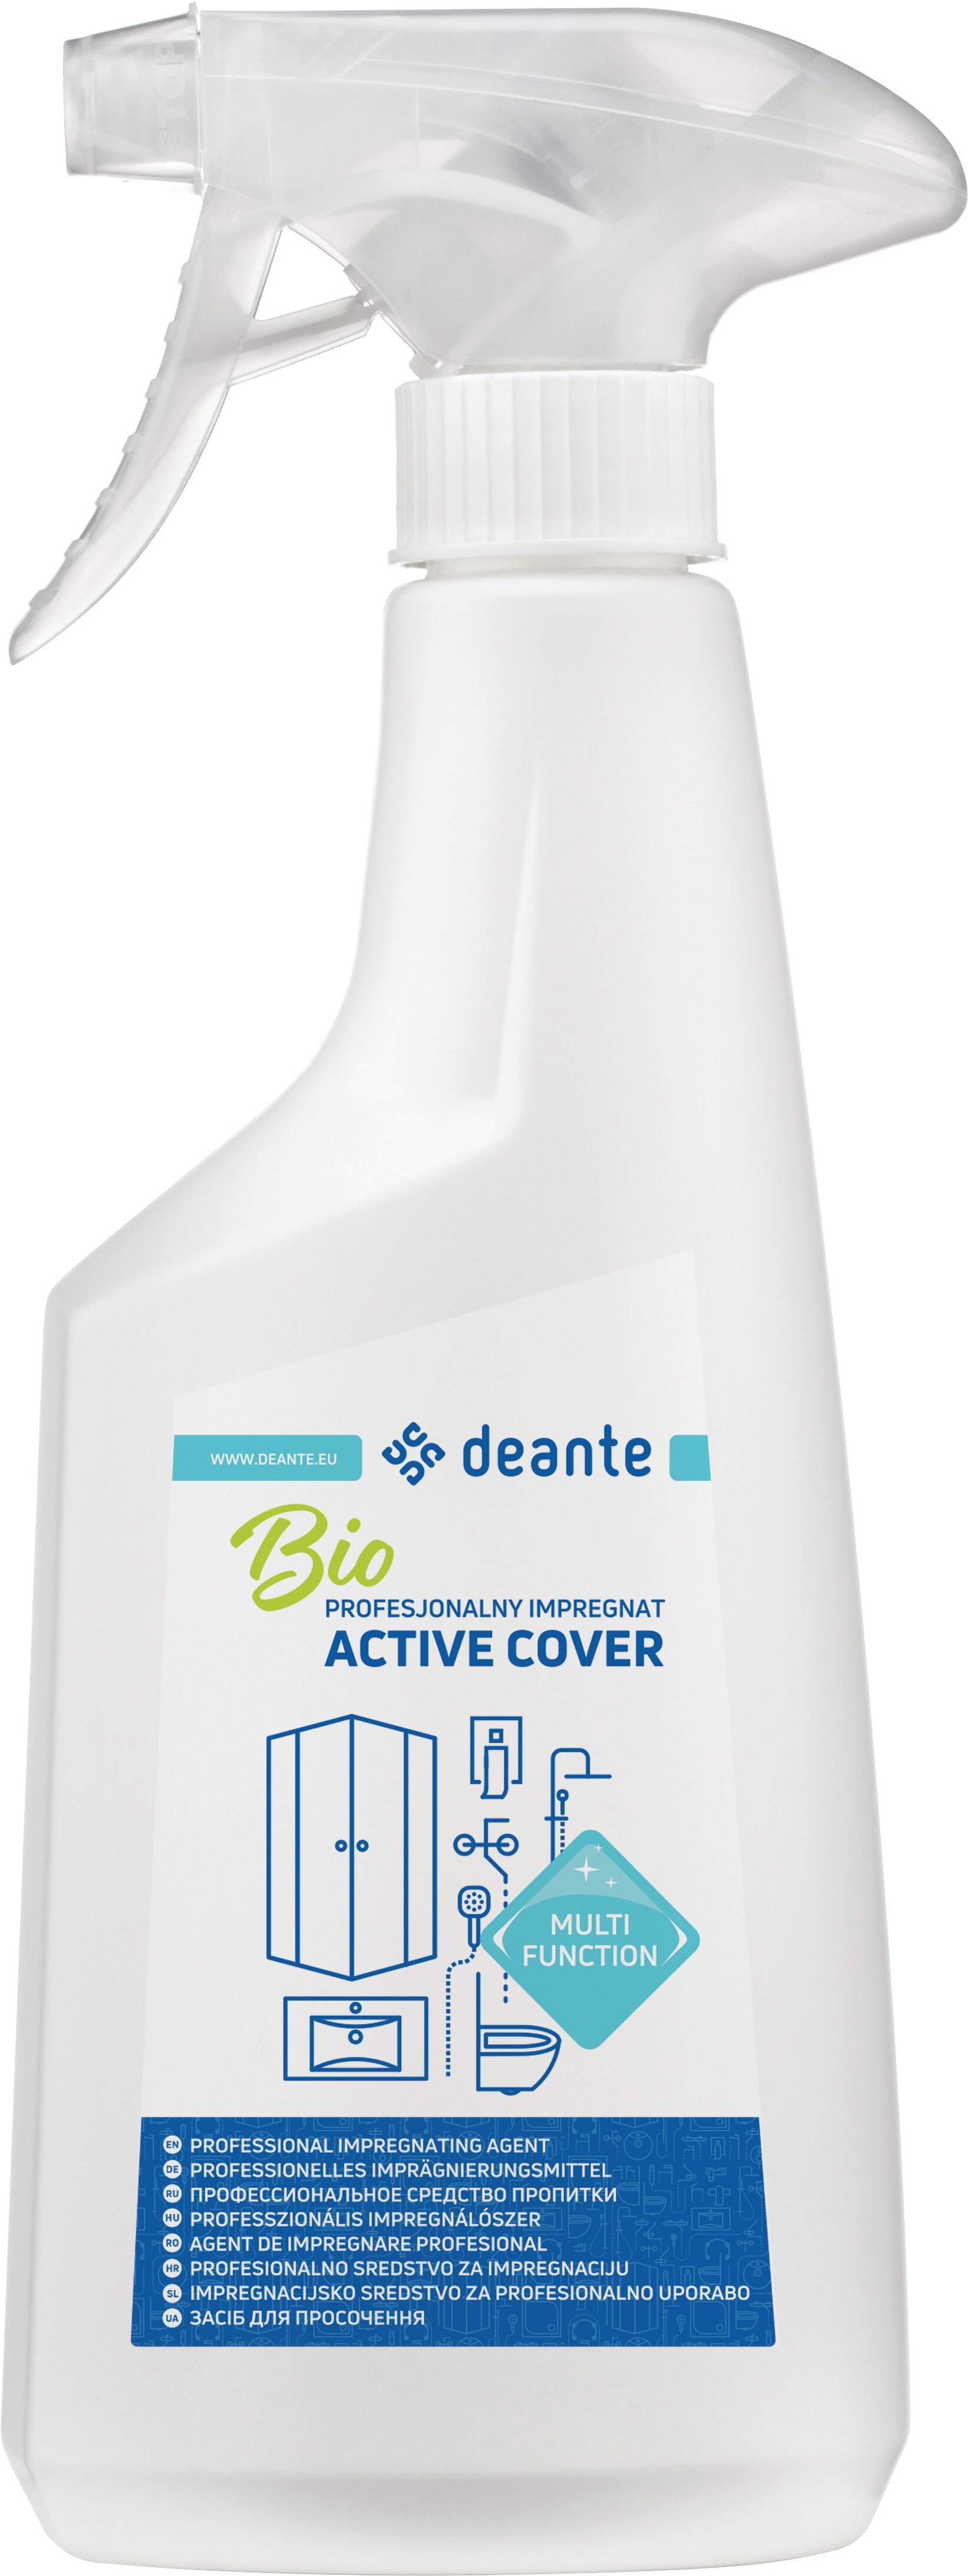 Deante Badezimmer Reinigung Präparat Active Cover Plus - Imprägniermittel für das Bad, 500 ml